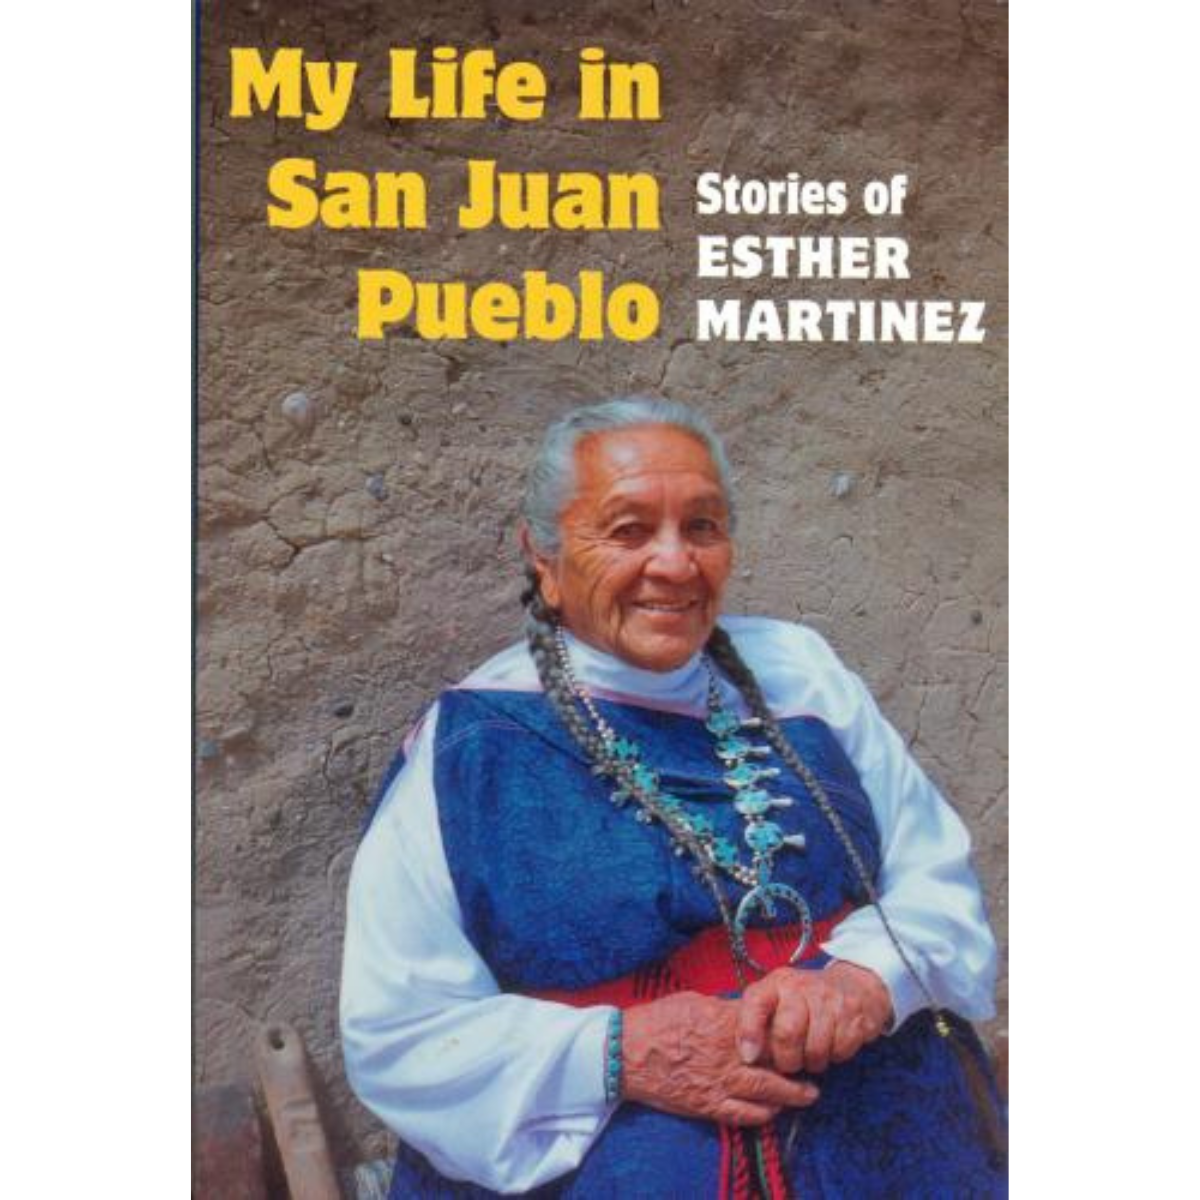 My Life in San Juan Pueblo - Stories of Esther Martinez